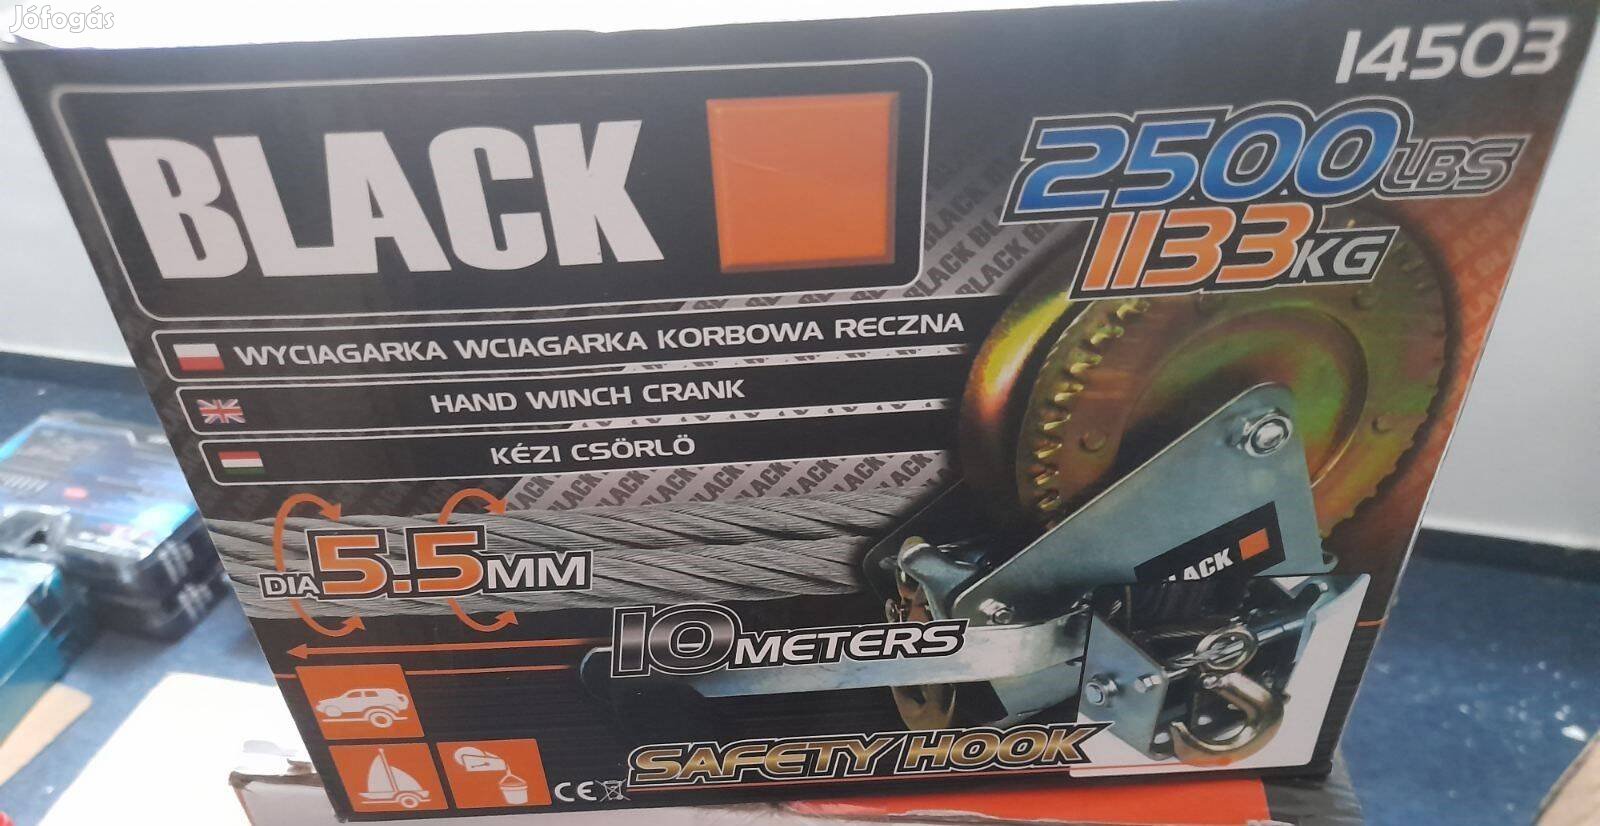 Új Black-tools drotköteles kézi csörlő 1133kg , 10Méter